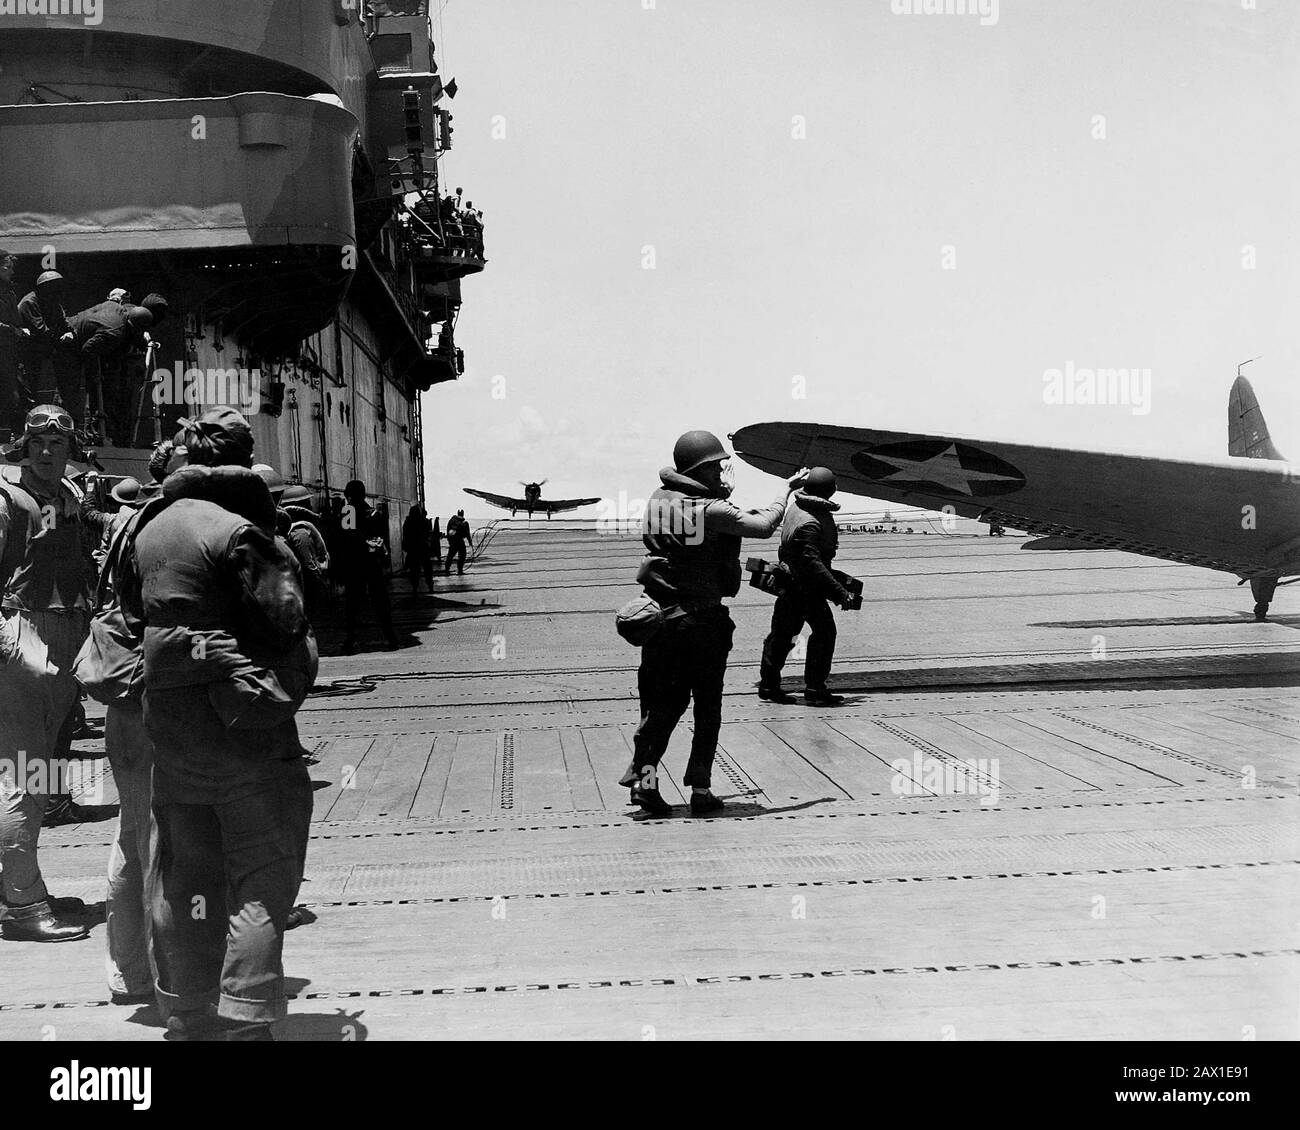 1942 , 6 GIUGNO , USA : BATTAGLIA DI MIDWAY . Una marina statunitense Douglas SBD-3 Dauntless di bombardamento squadrone VB-8 o scouting squadron VS-8 atterrano sulla portaerei USS Hornet (CV-8) durante la battaglia di Midway, 4 giugno 1942. Nota il personale che indossa l'equipaggiamento da battaglia e il pilota in equipaggiamento completo per il volo, tra cui casco in pelle, Mae West e tuta da volo. VB-8 e VS-8 non hanno individuato la flotta giapponese durante le operazioni del 4 giugno 1942, perdendo sei aerei tra loro. Tuttavia, il 6 giugno gli squadroni hanno partecipato ad attacchi contro gli incrociatori giapponesi Mogami e Mikuma - SECONDA GUERRA MONDIALE - seconda guerra mondiale - SECONDA guerra mondiale - SECONDA guerra mondiale - SECONDA GUERRA mondiale - SECONDA GUERRA mondiale Foto Stock